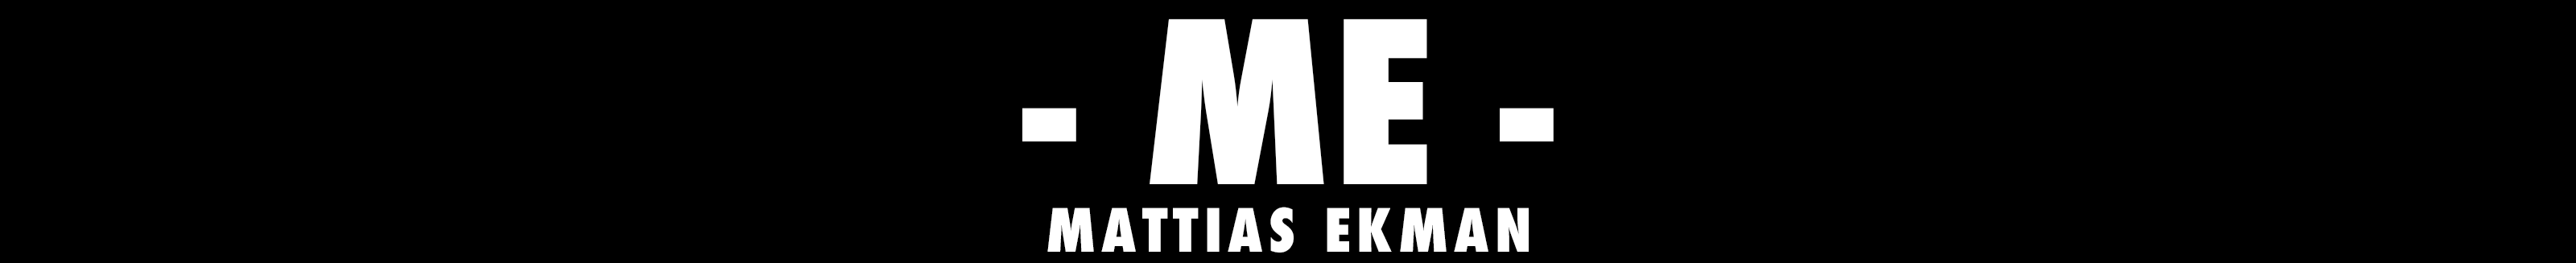 Bannière de profil de Mattias Ekman